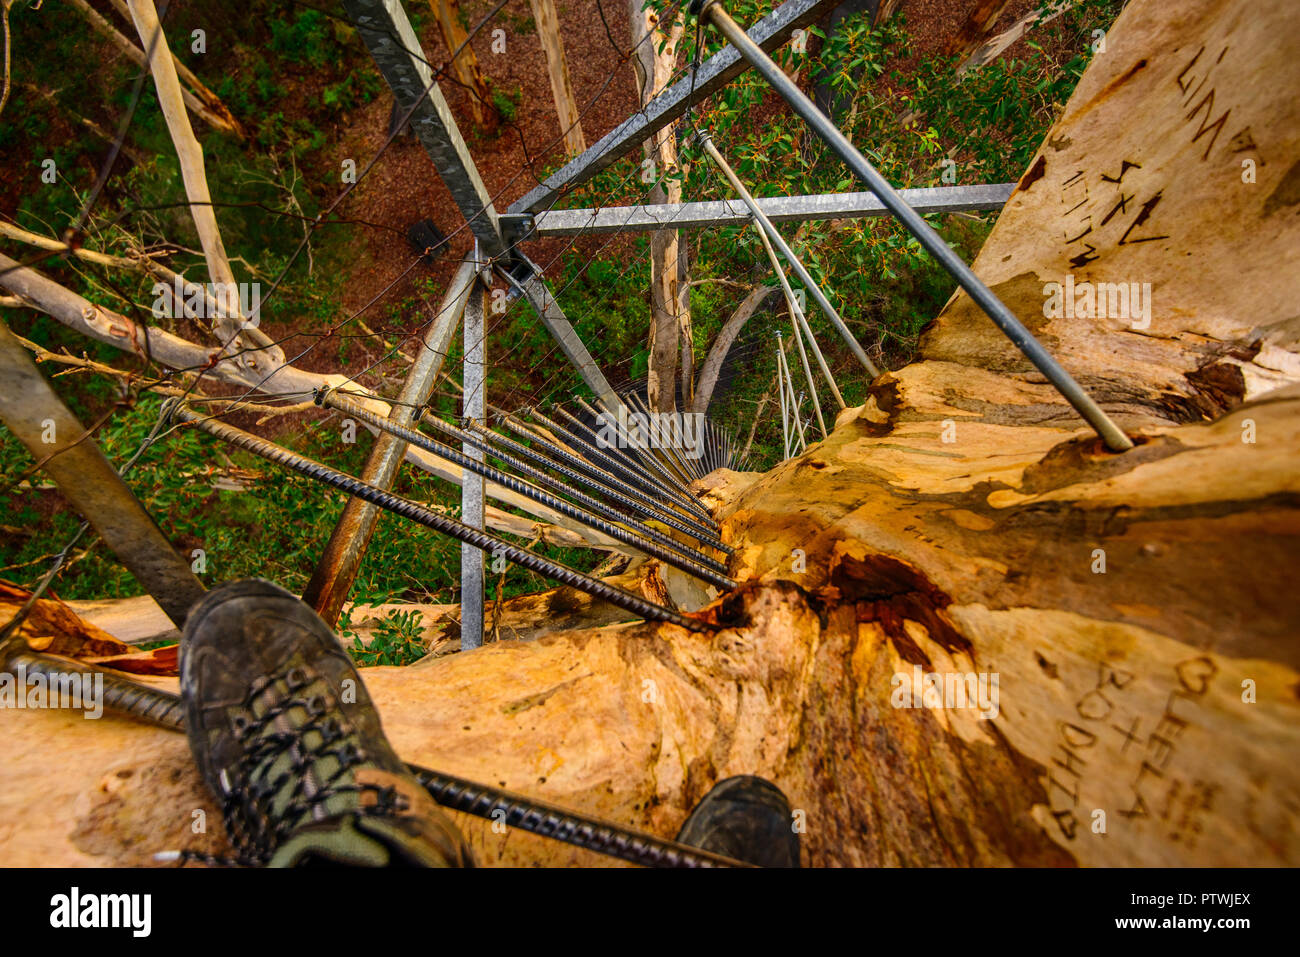 Monter à l'échelle de l'arbre, escalade, Gloucester rd de Bruma, Pemberton WA, Australie occidentale, Australie Banque D'Images